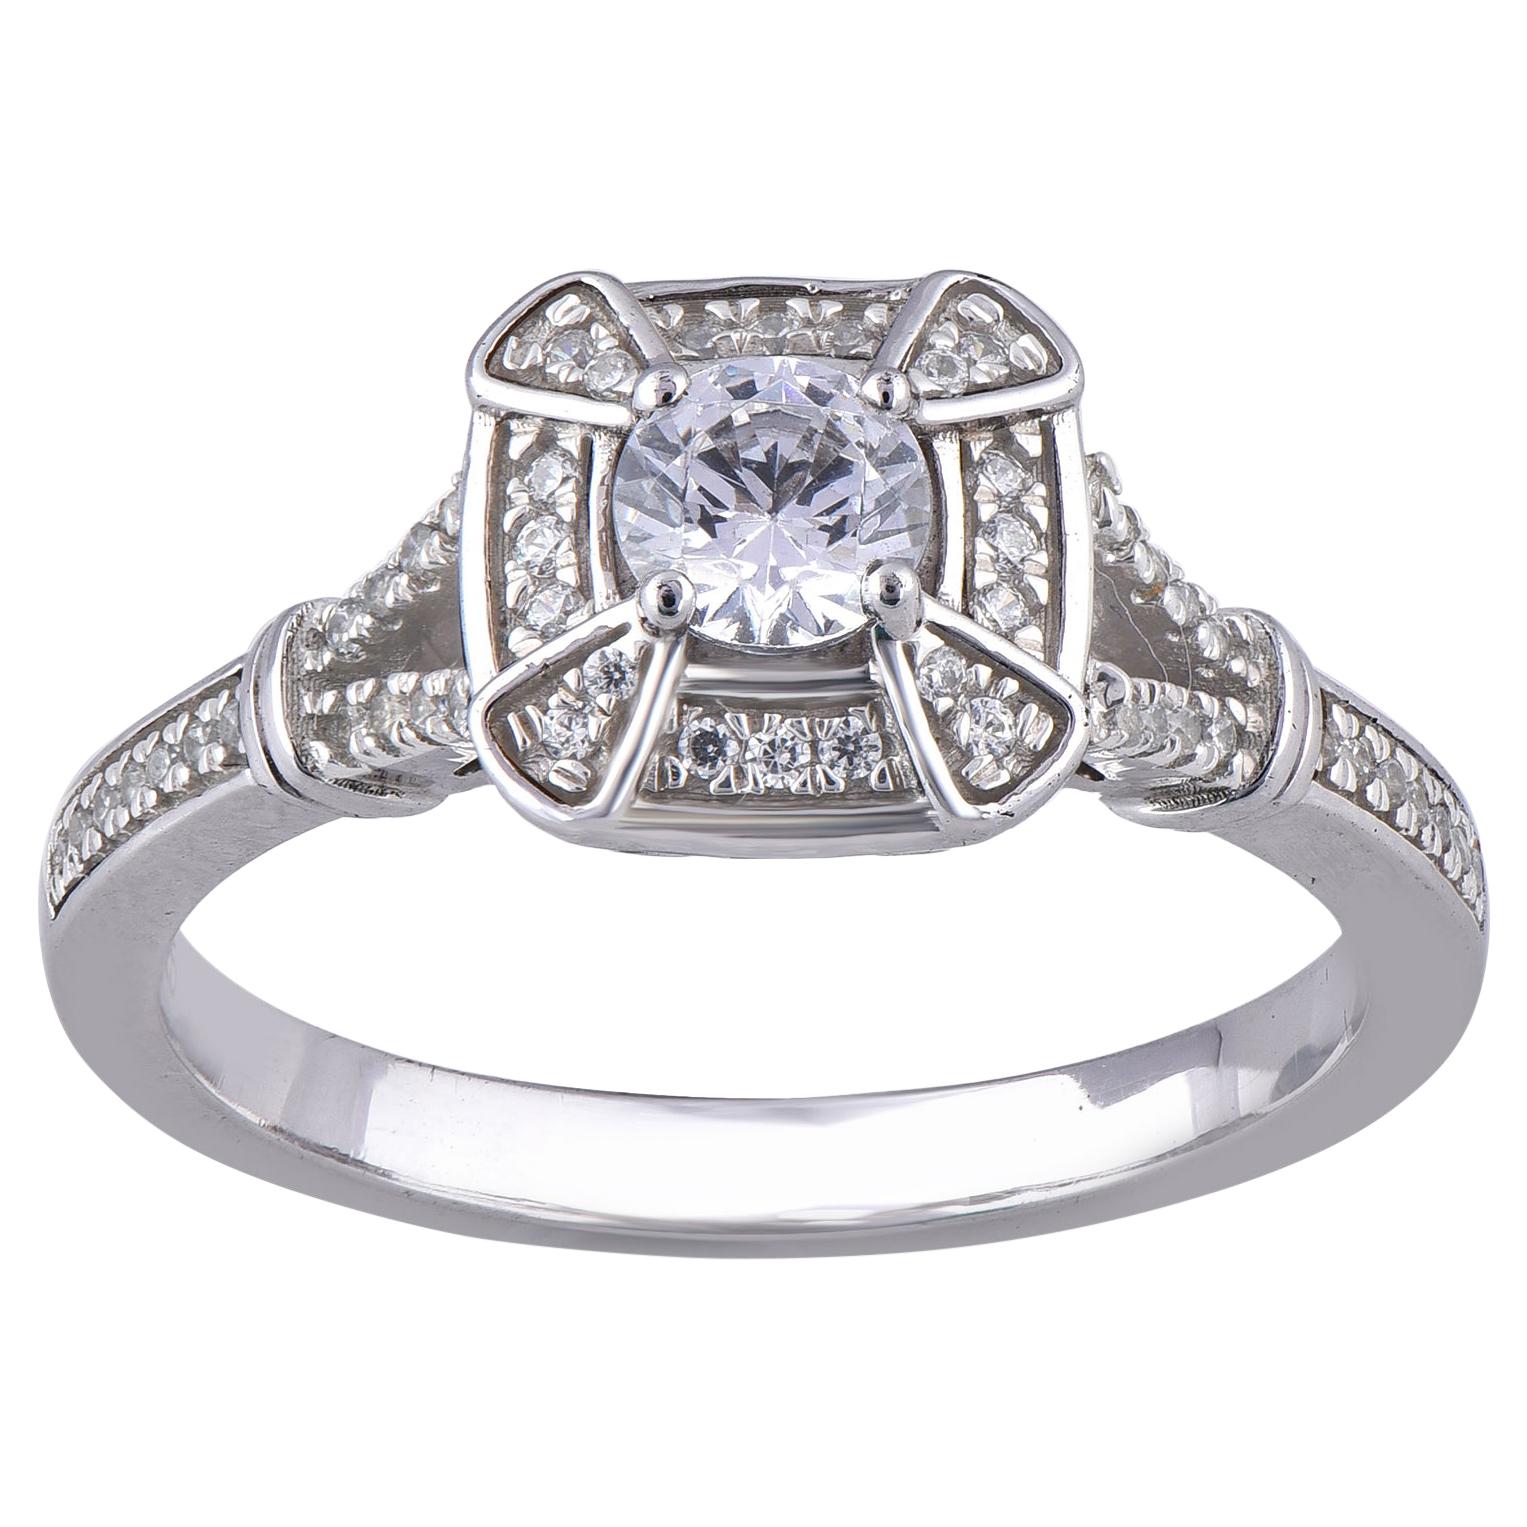 TJD 0.50 Carat Diamond 18 Karat White Gold Sqare Frame Engagement Ring